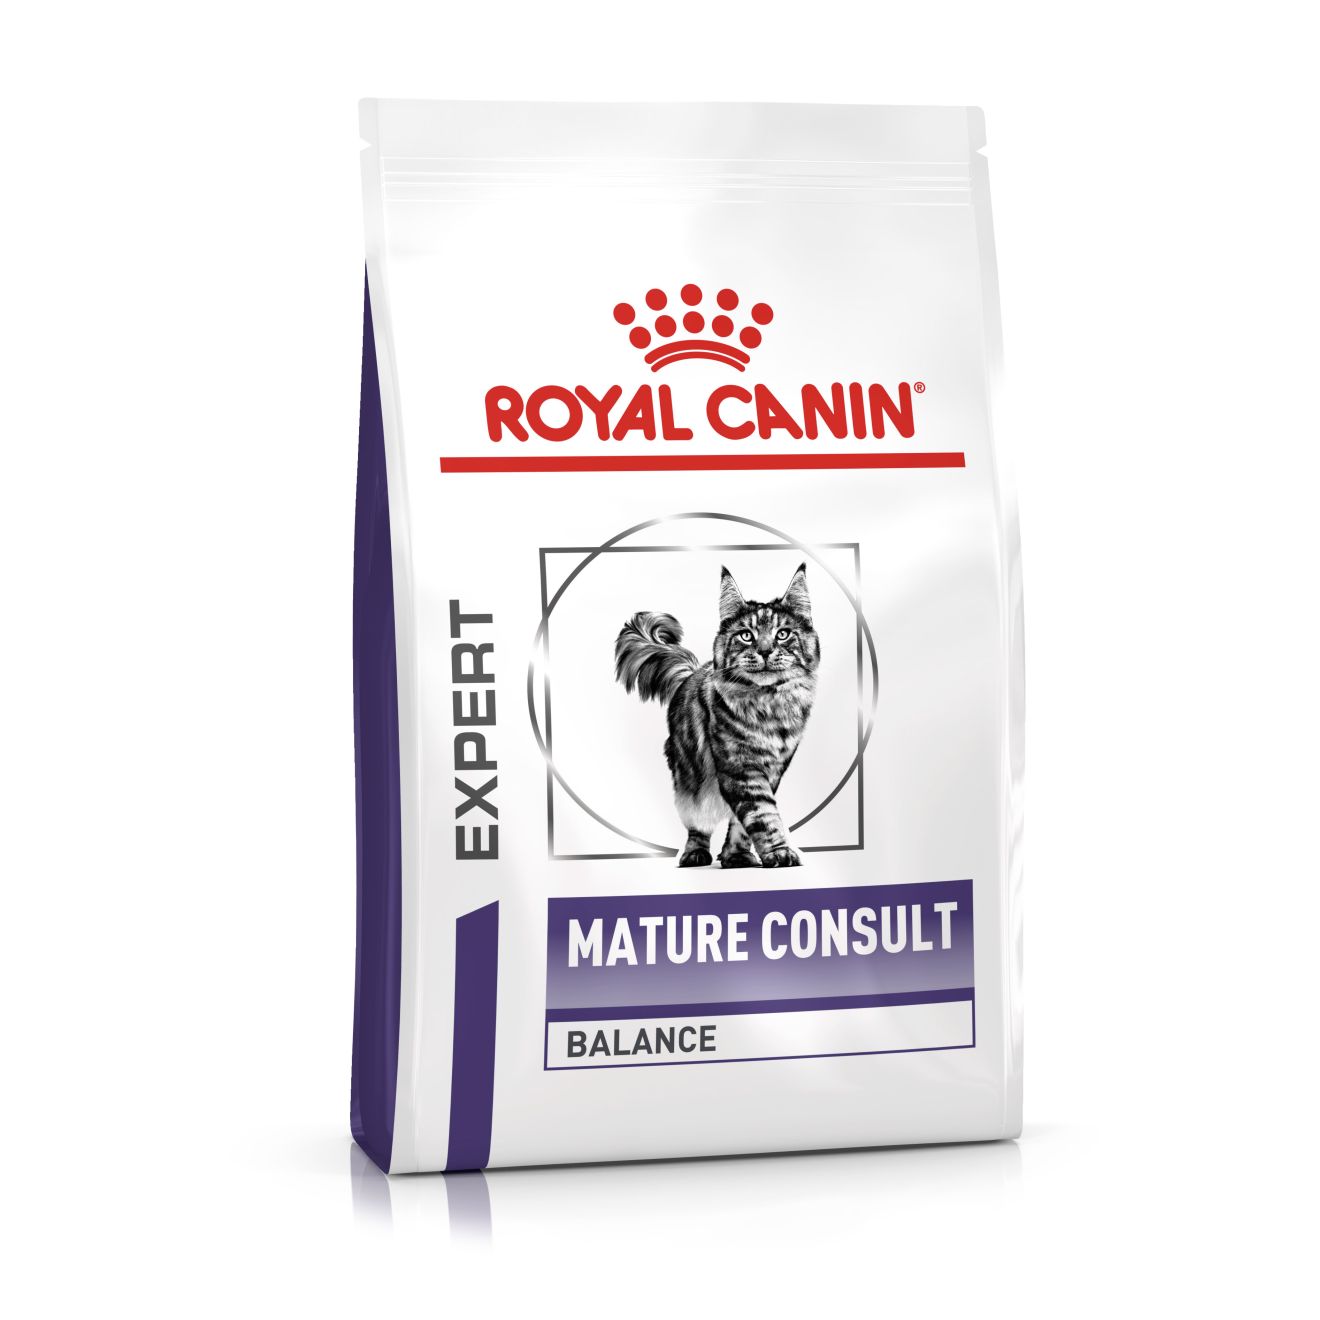 ROYAL CANIN Expert MATURE CONSULT BALANCE Trockenfutter für Katzen 10 kg